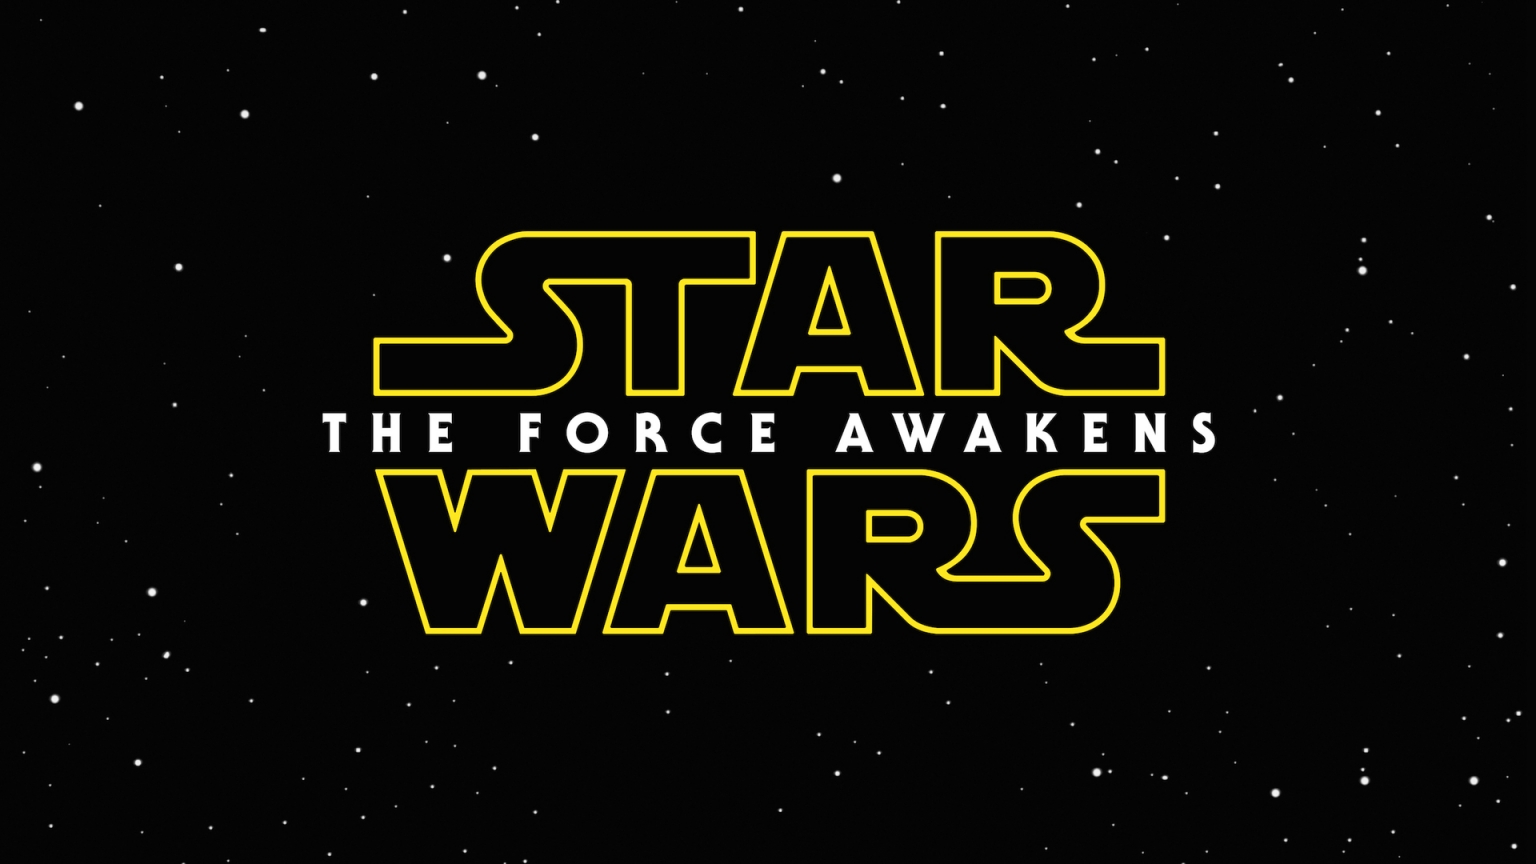 Star Wars The Force Awakens Logo for 1536 x 864 HDTV resolution